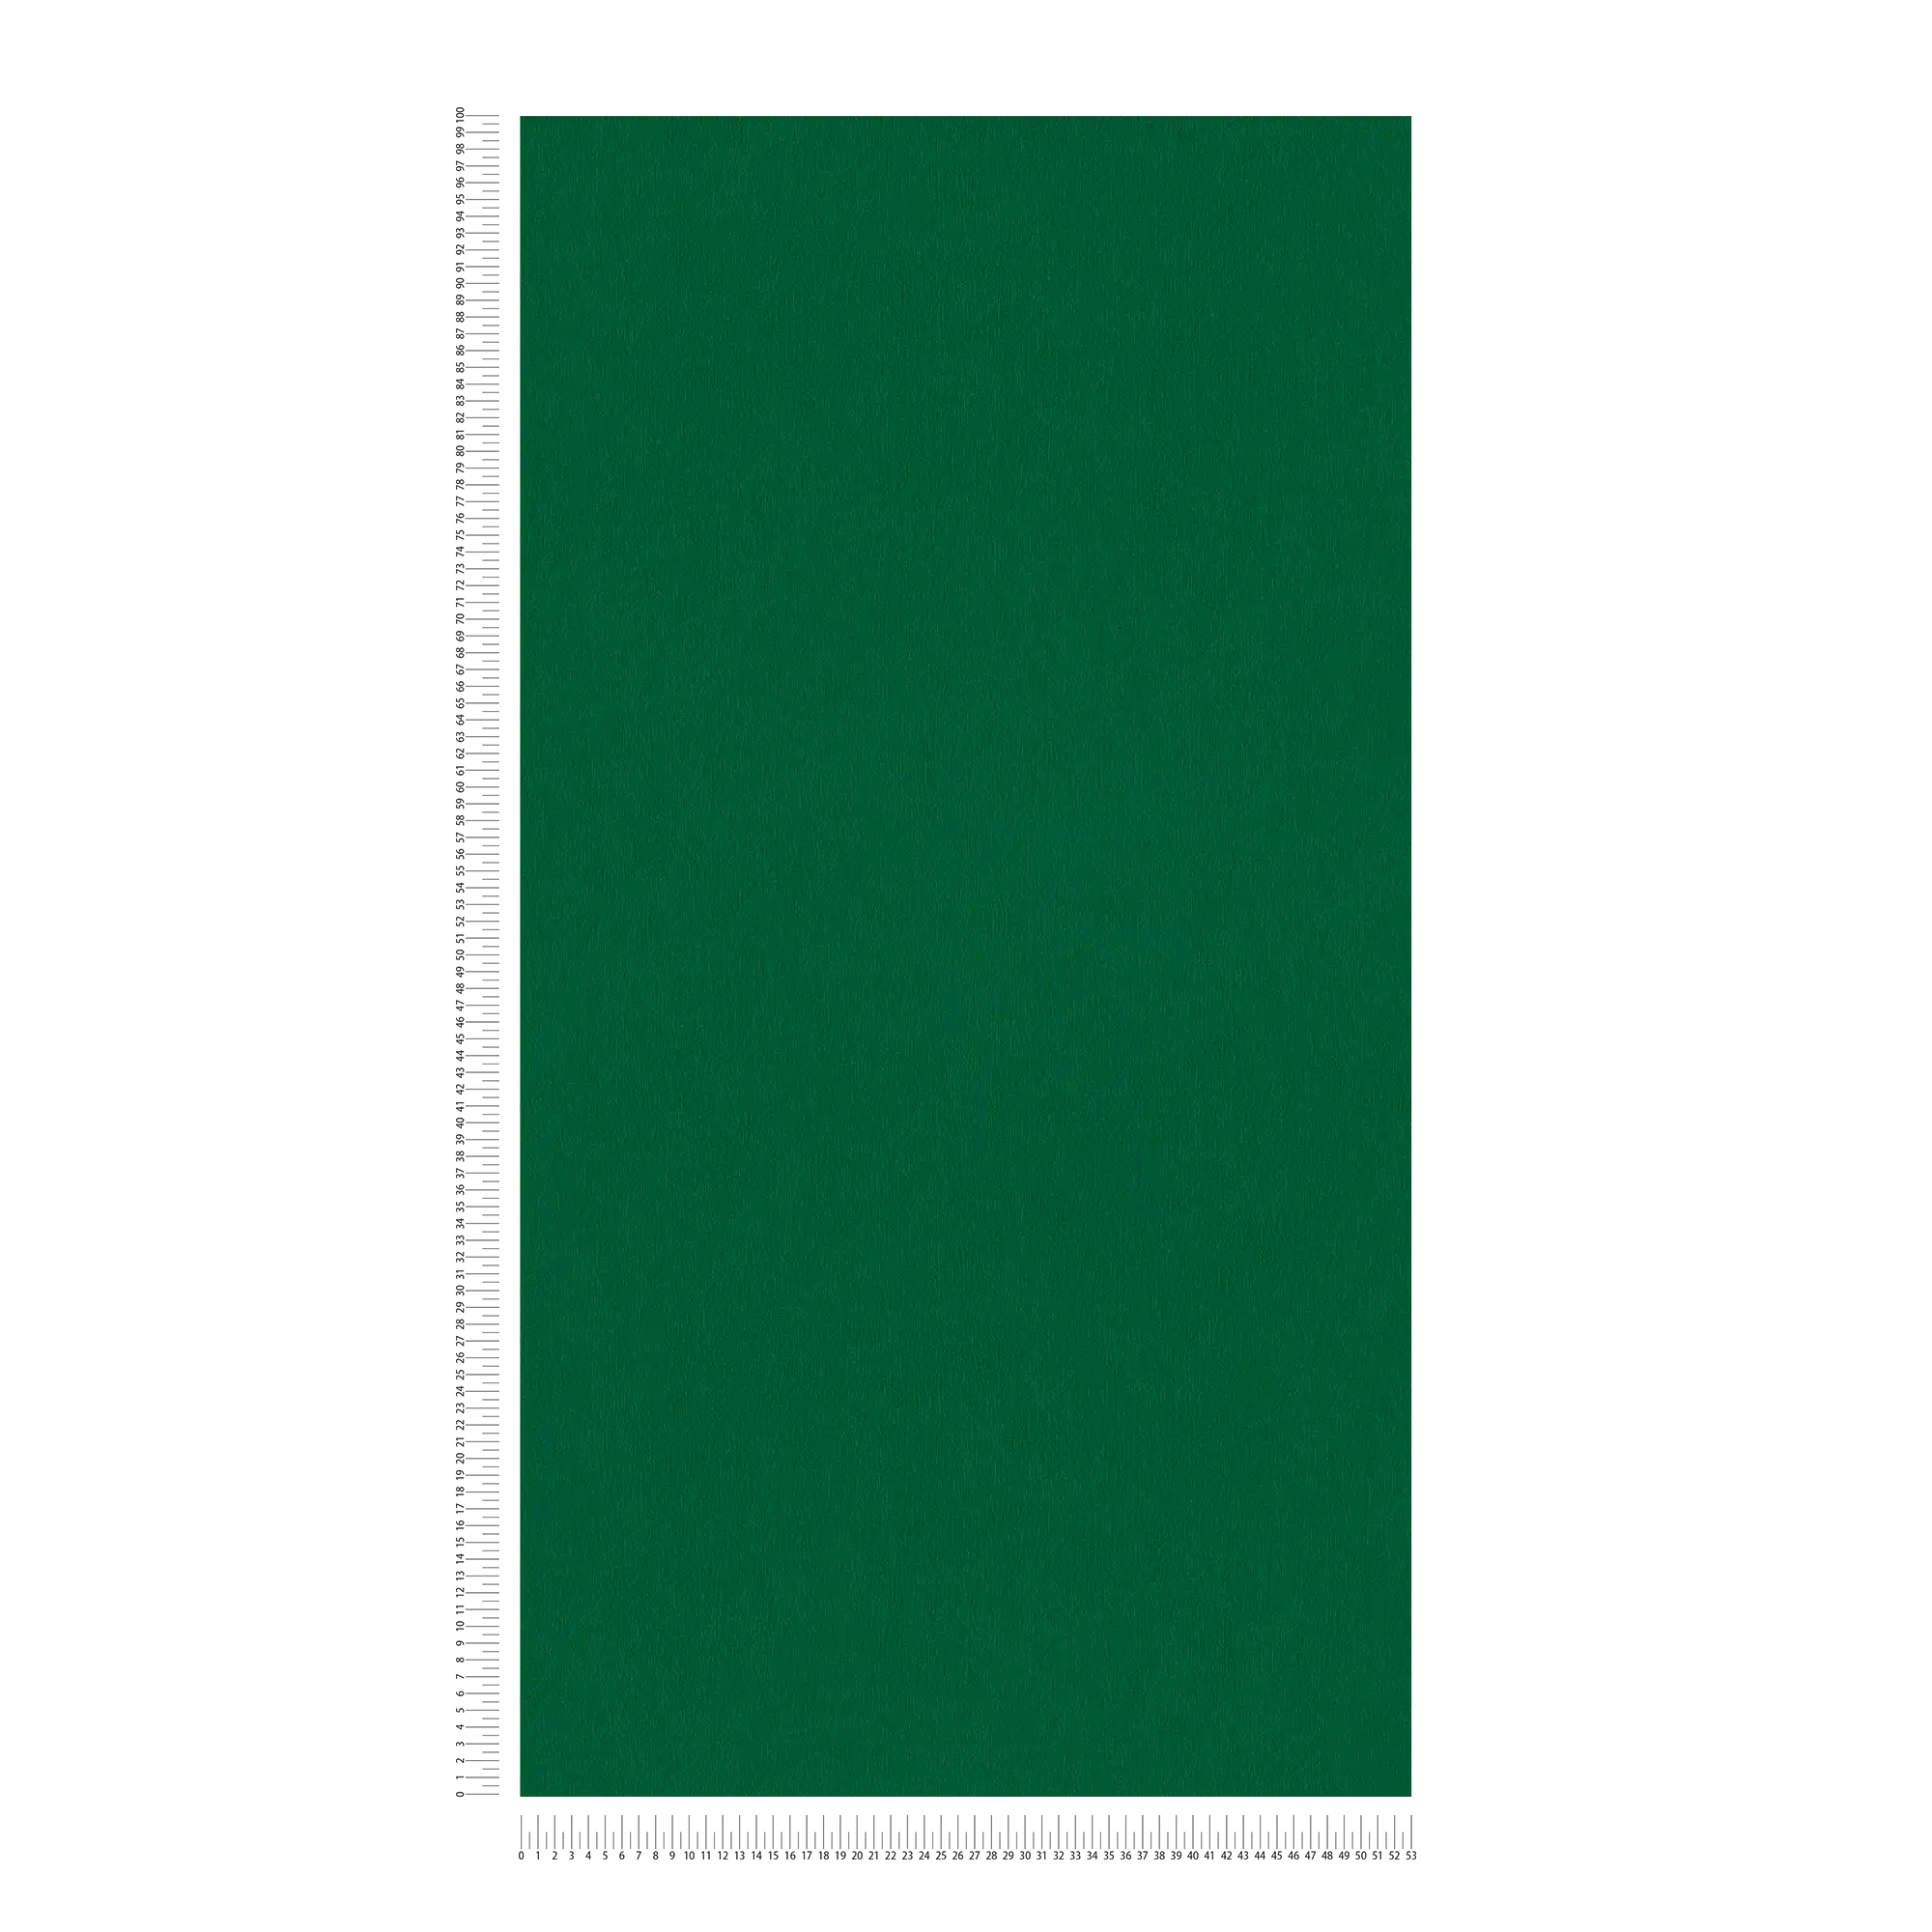             papel pintado verde oscuro liso, satinado y liso - verde
        